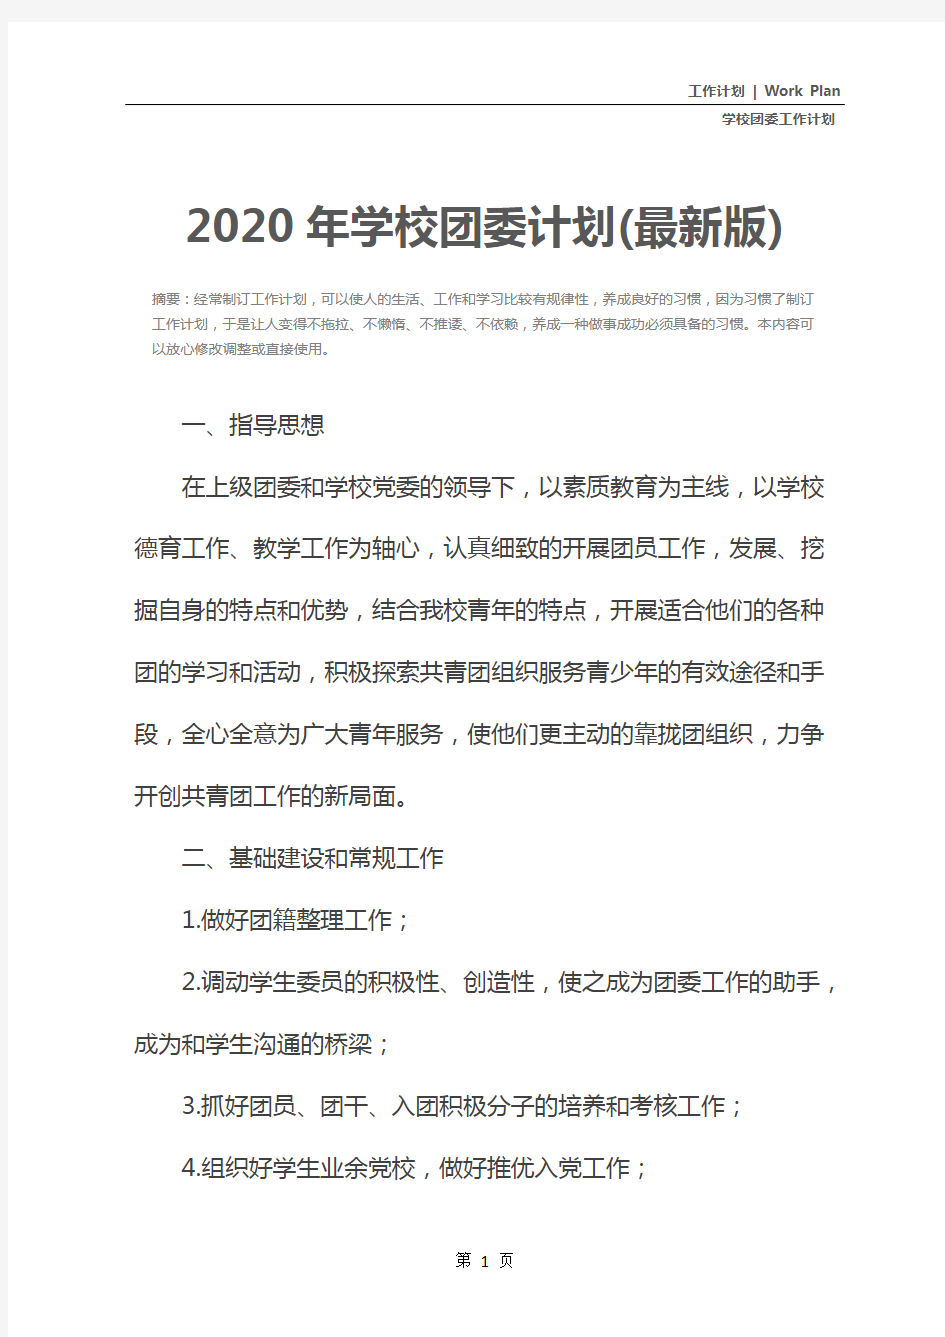 2020年学校团委计划(最新版)